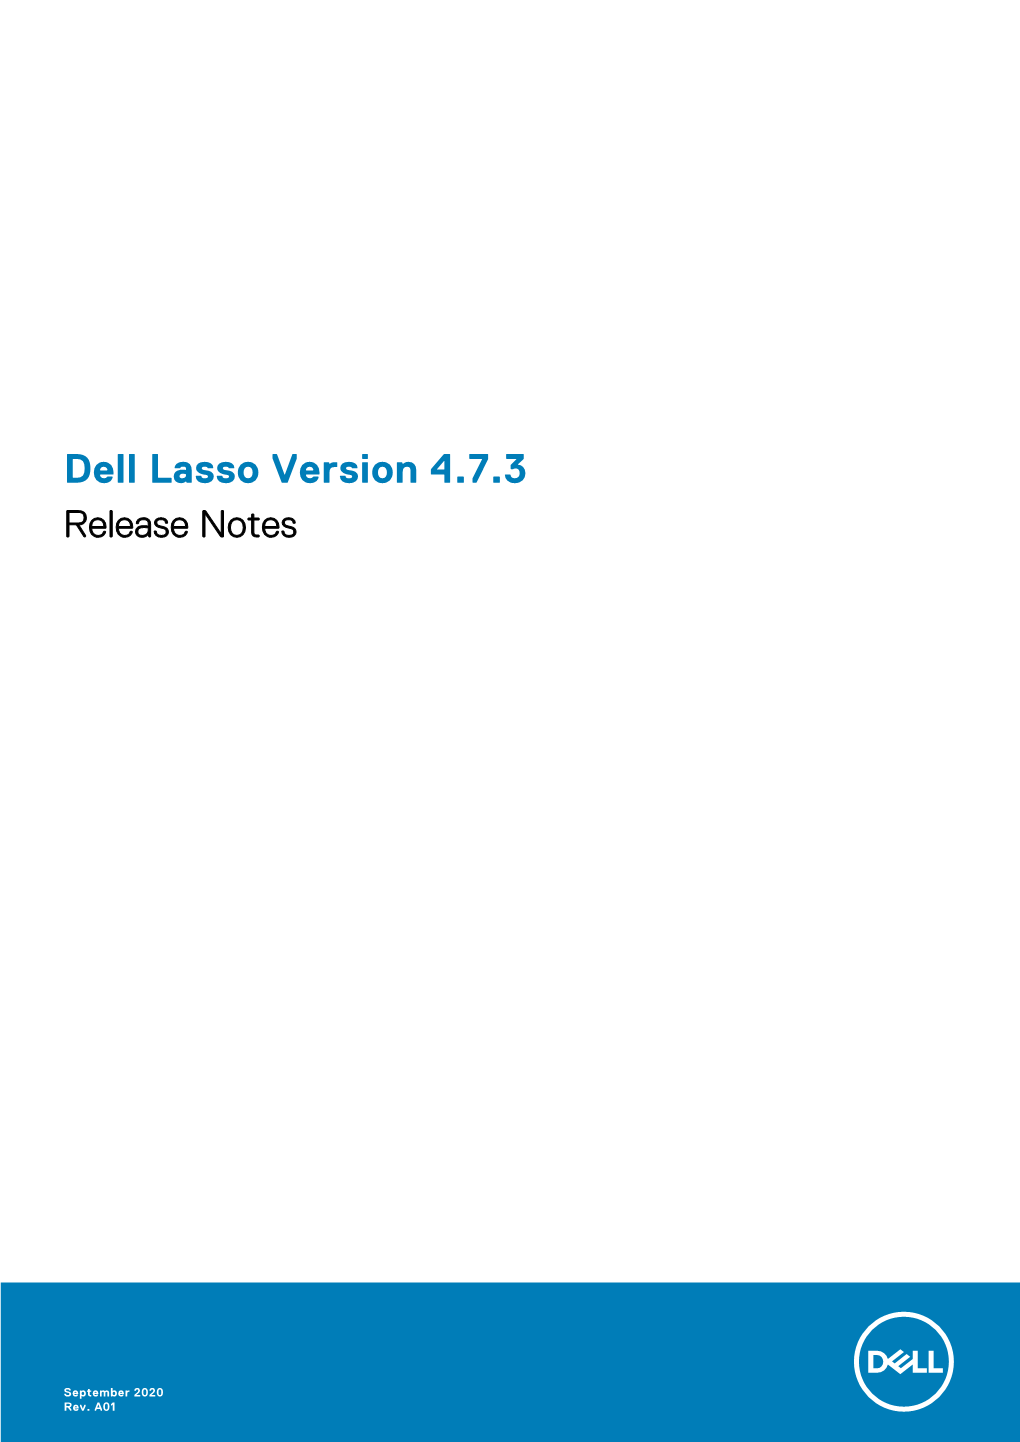 Dell Lasso Version 4.7.3 Release Notes